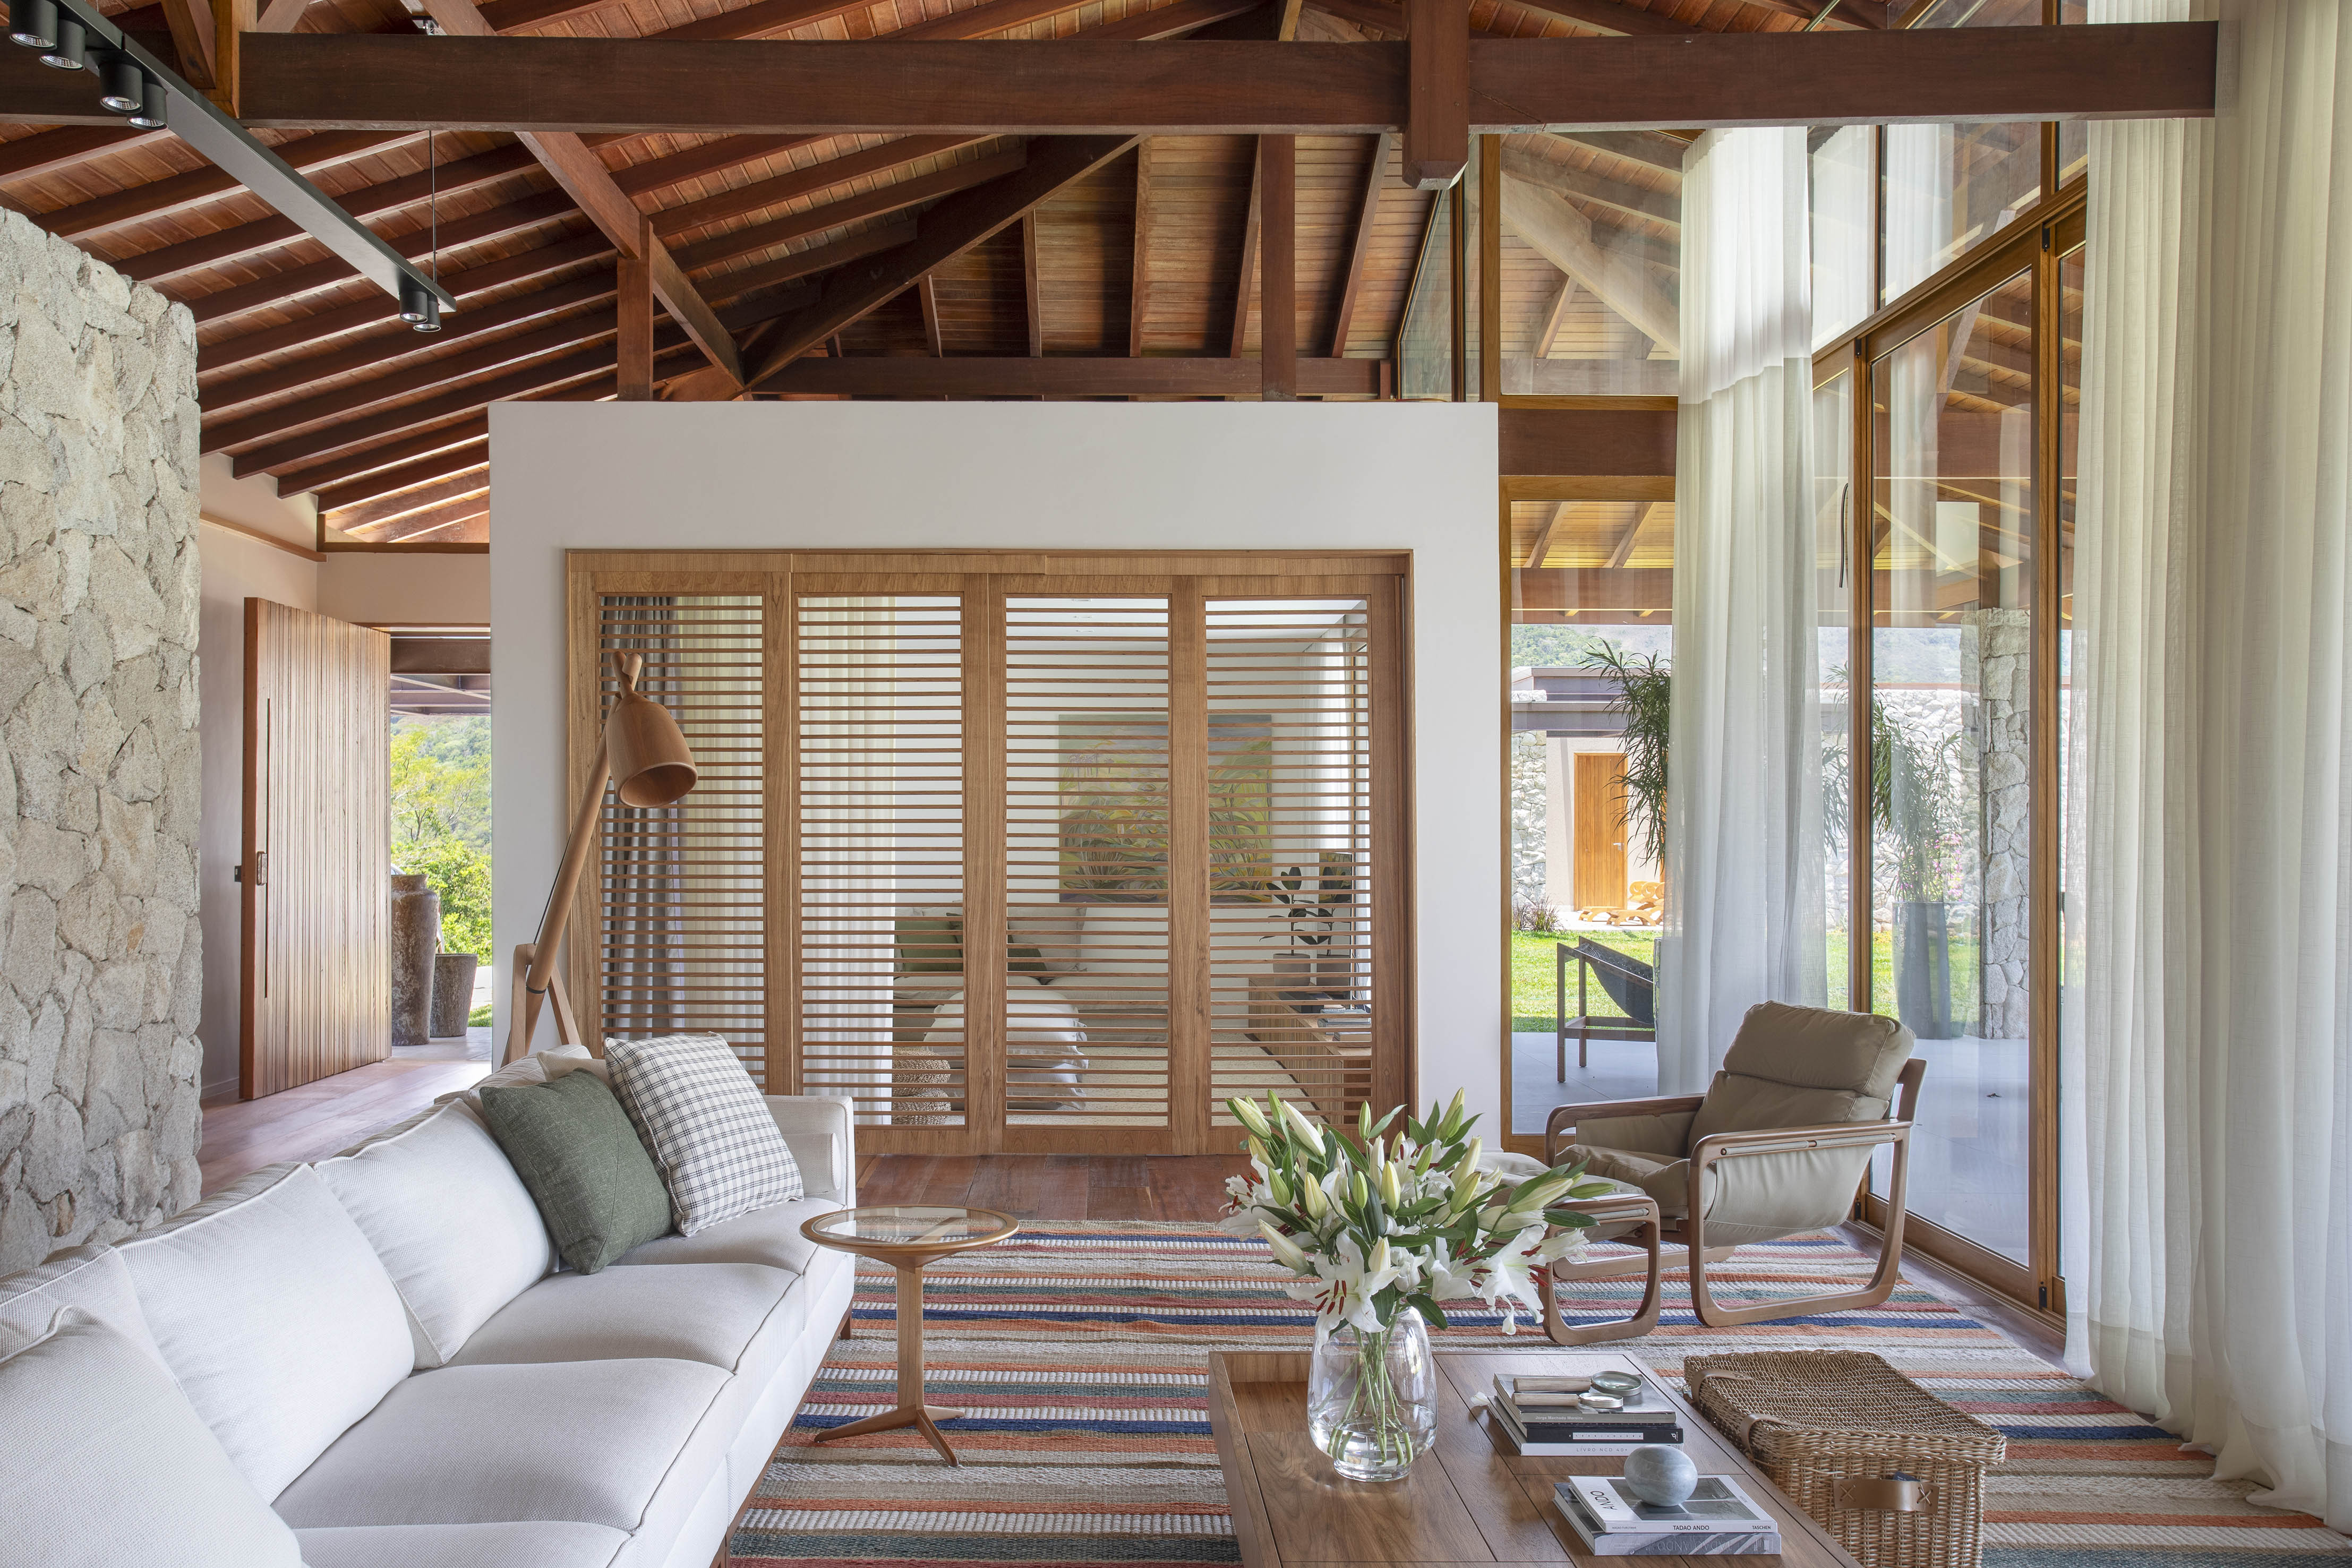 Tons naturais e base neutra marcam casa de campo com cozinha provençal. Projeto de João Panaggio. Na foto, sala de estar com pé-direito duplo, tapete listrado, sofás brancos, mesa de centro.